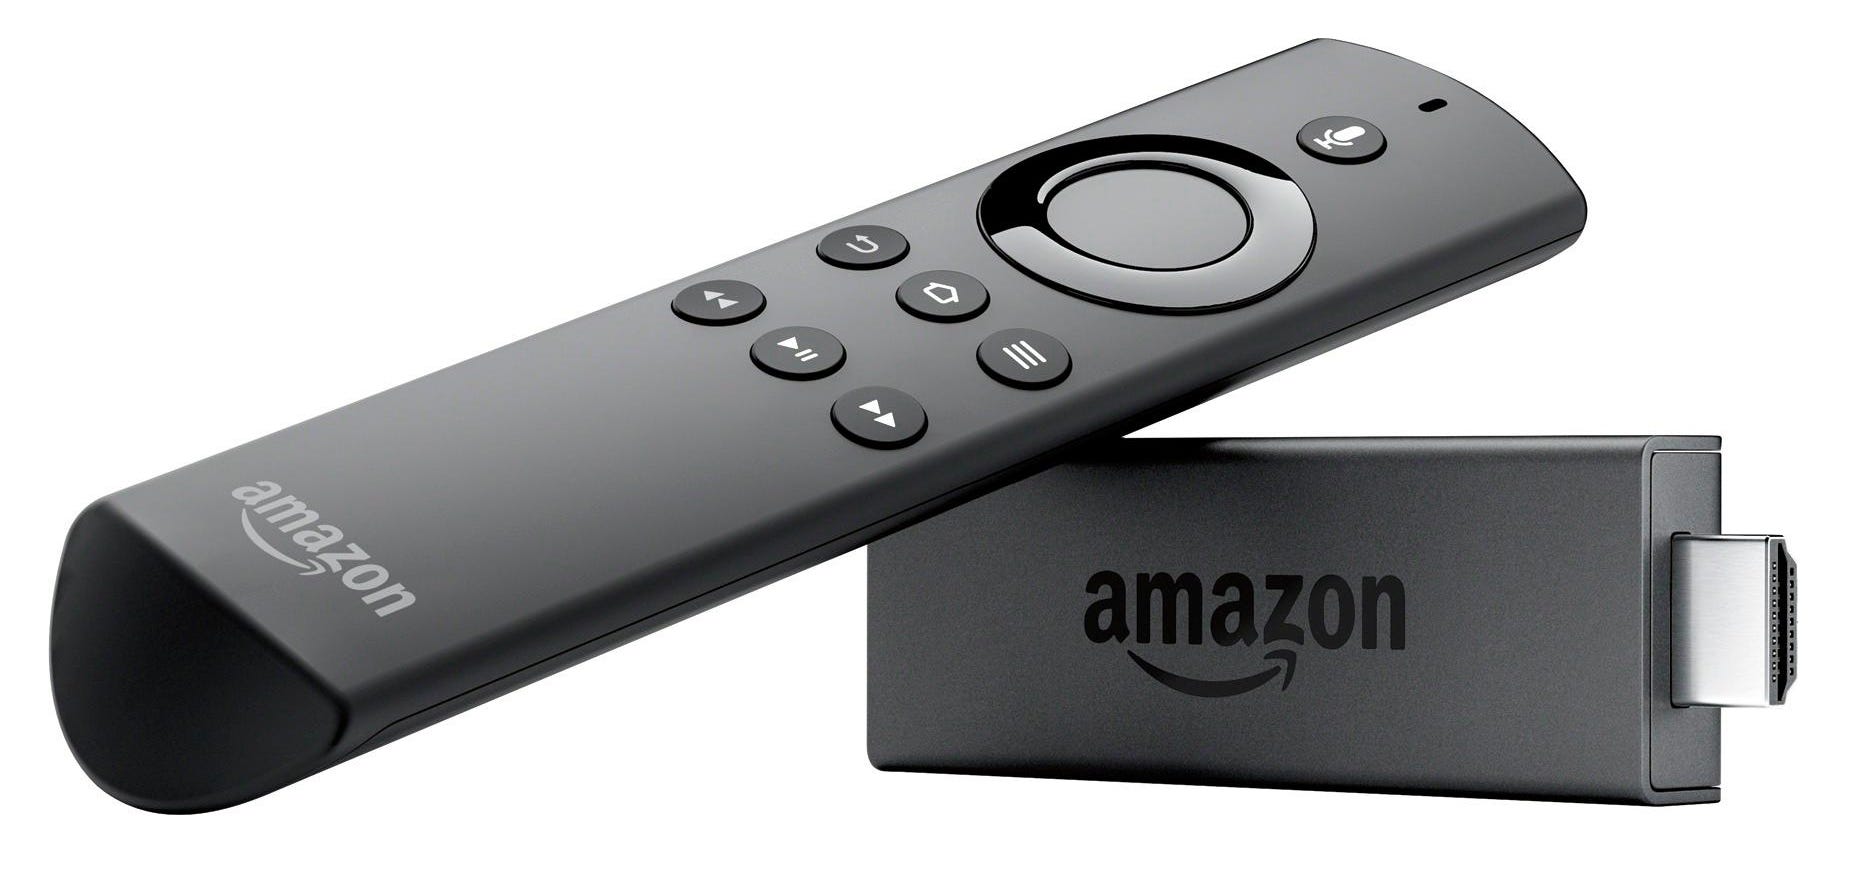 immagine del dispositivo Amazon Fire Stick e del telecomando